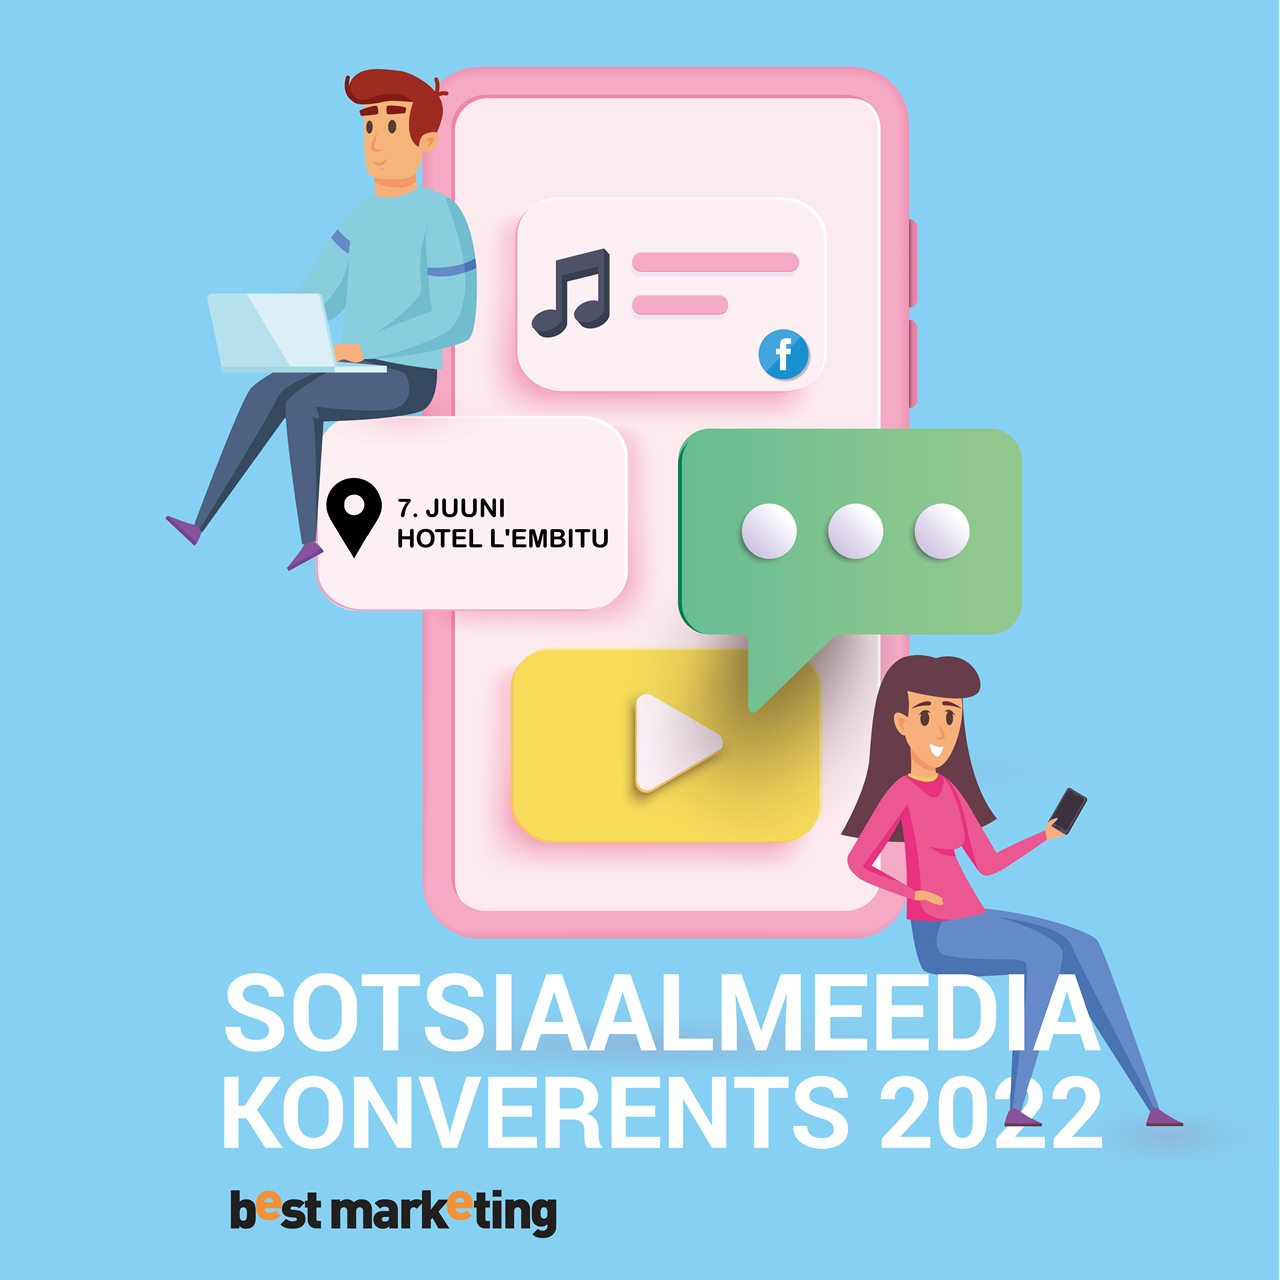 Sotsiaalmeedia konverents 2022 pilt